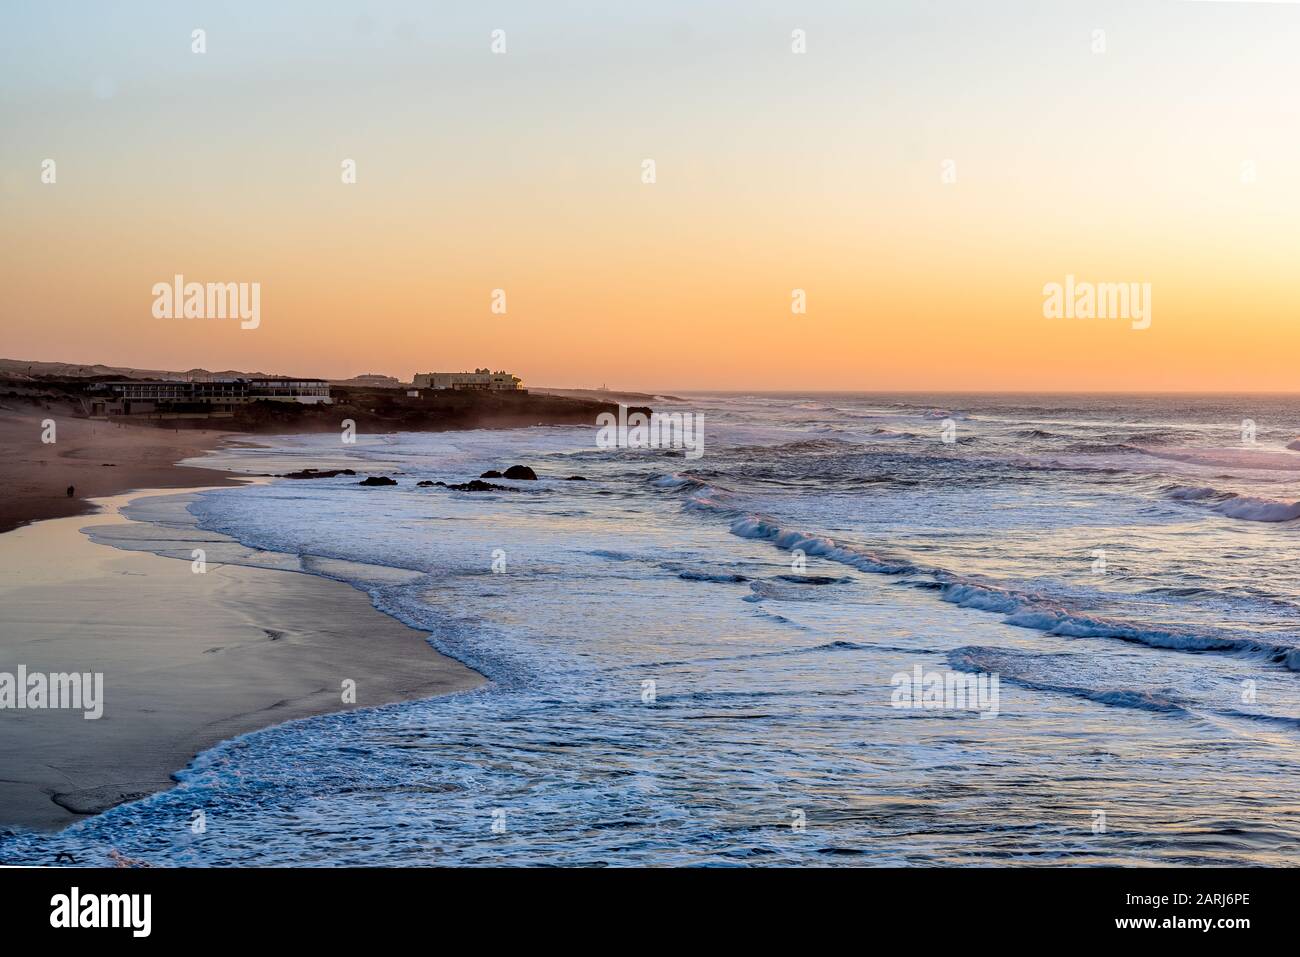 Les vagues de l'océan Atlantique qui s'étendent sur la plage Guincho - Praia do Guincho - sur la côte de Sintra au Portugal au coucher du soleil avec des bâtiments sur le promontoire en gro Banque D'Images